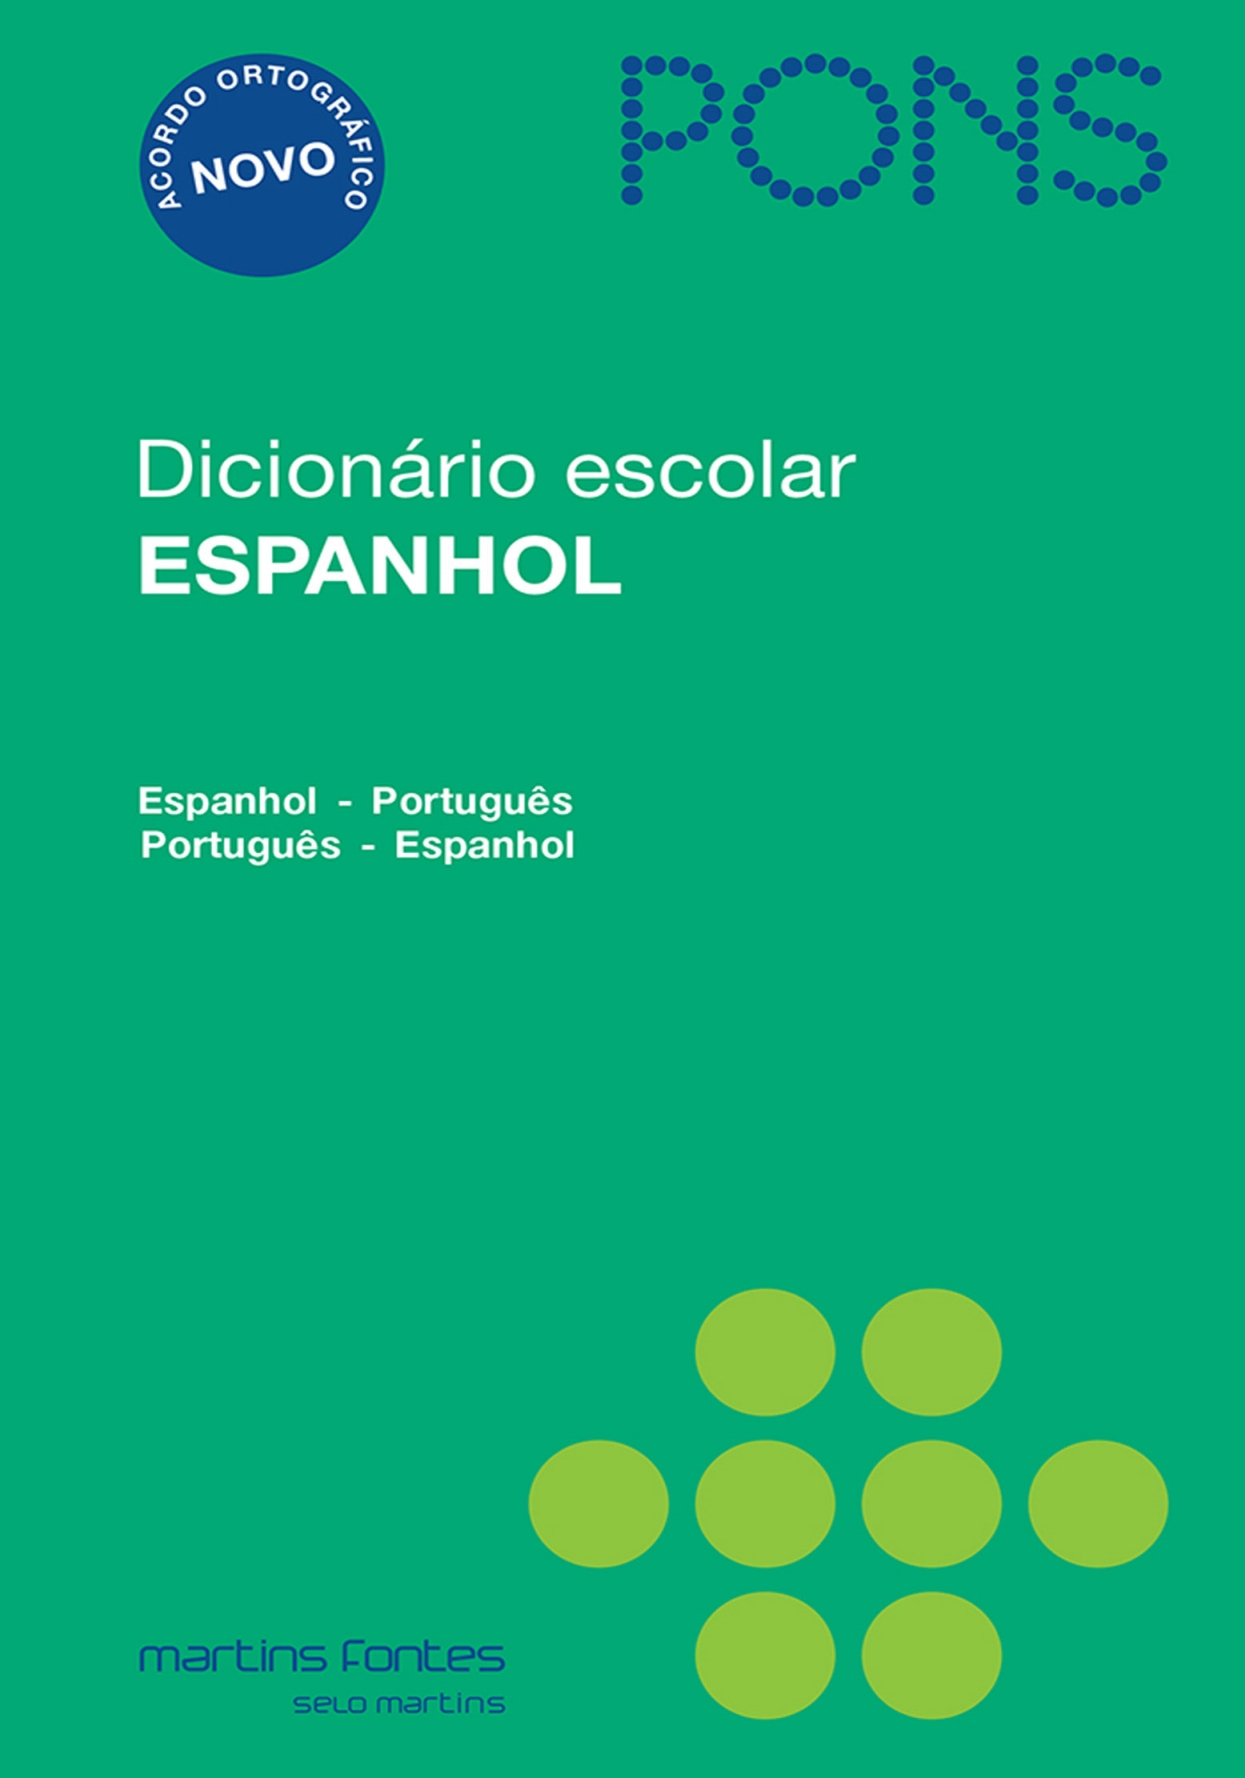 Dicionário escolar espanhol Pons - Espanhol/Português- Português/Espanhol